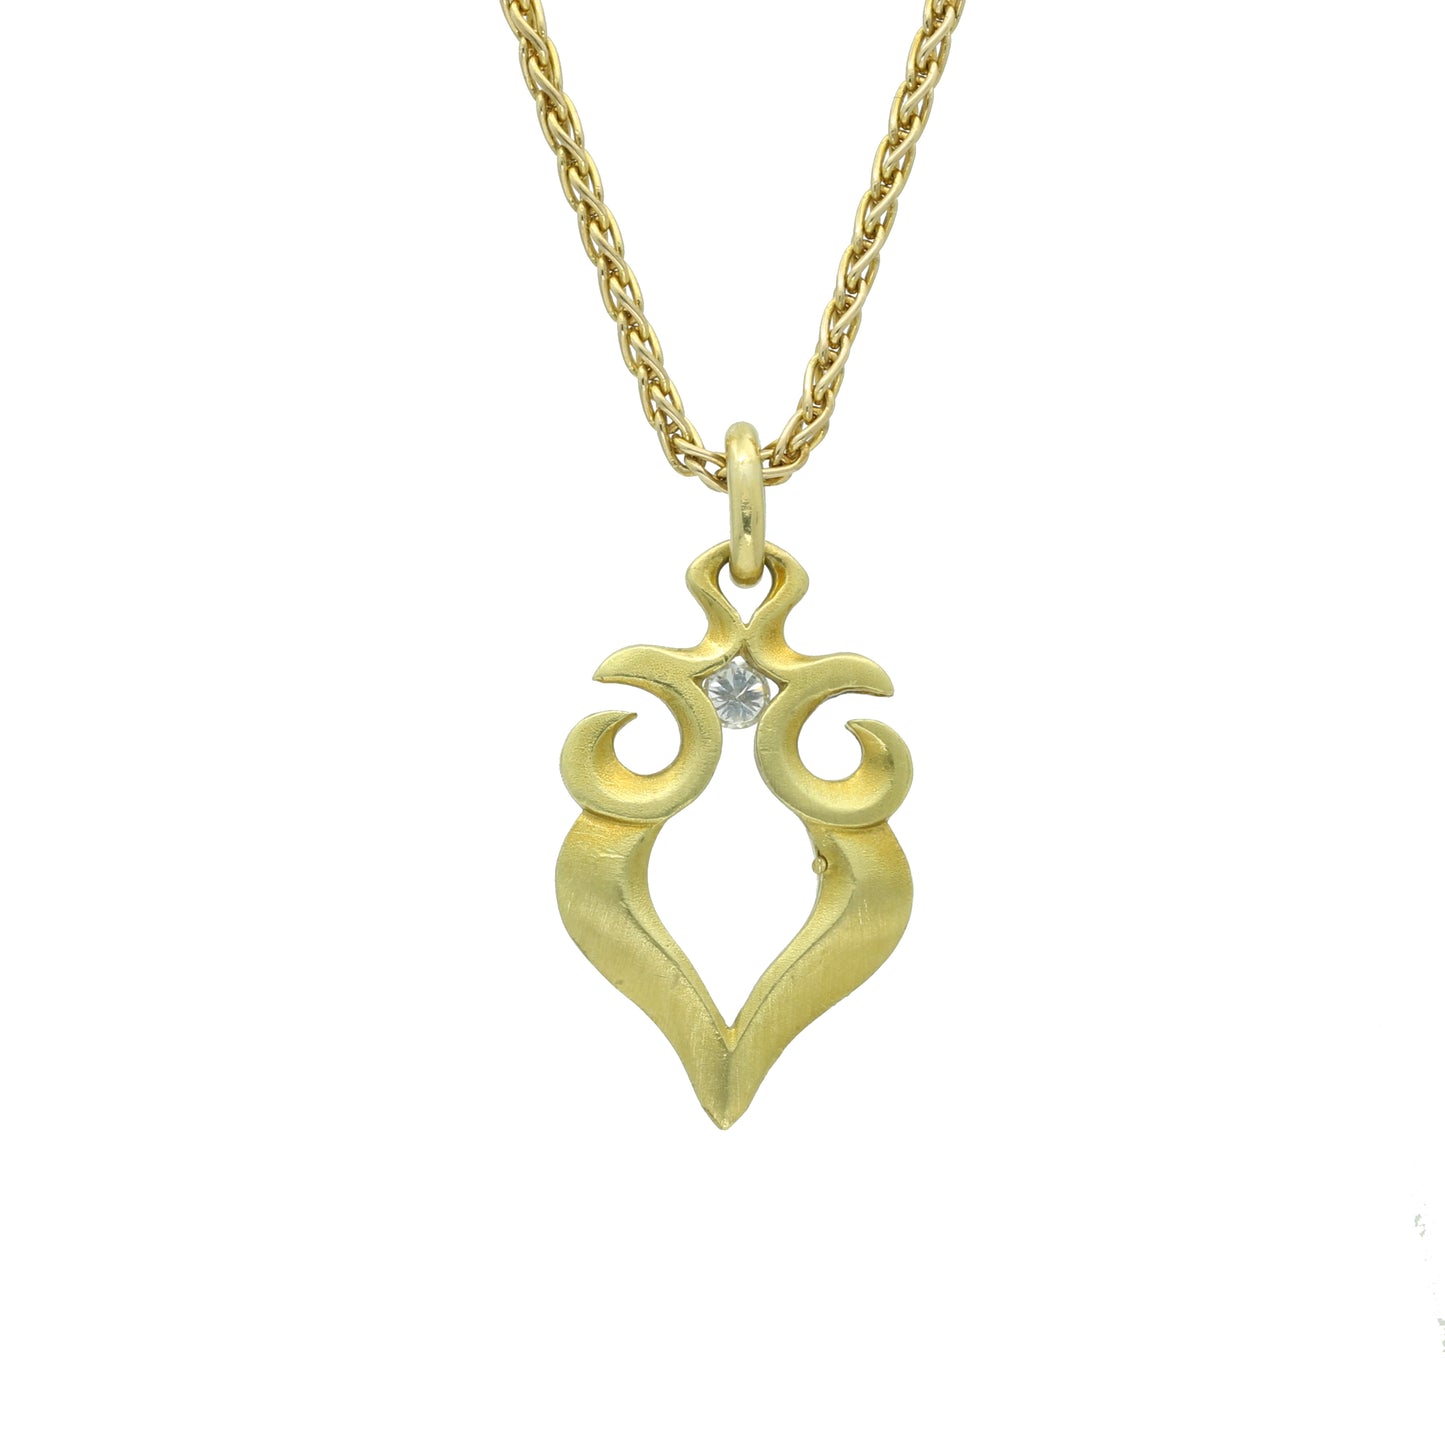 Stylish and Modern Diamond Pendant Necklace 18k 14k Yellow Gold